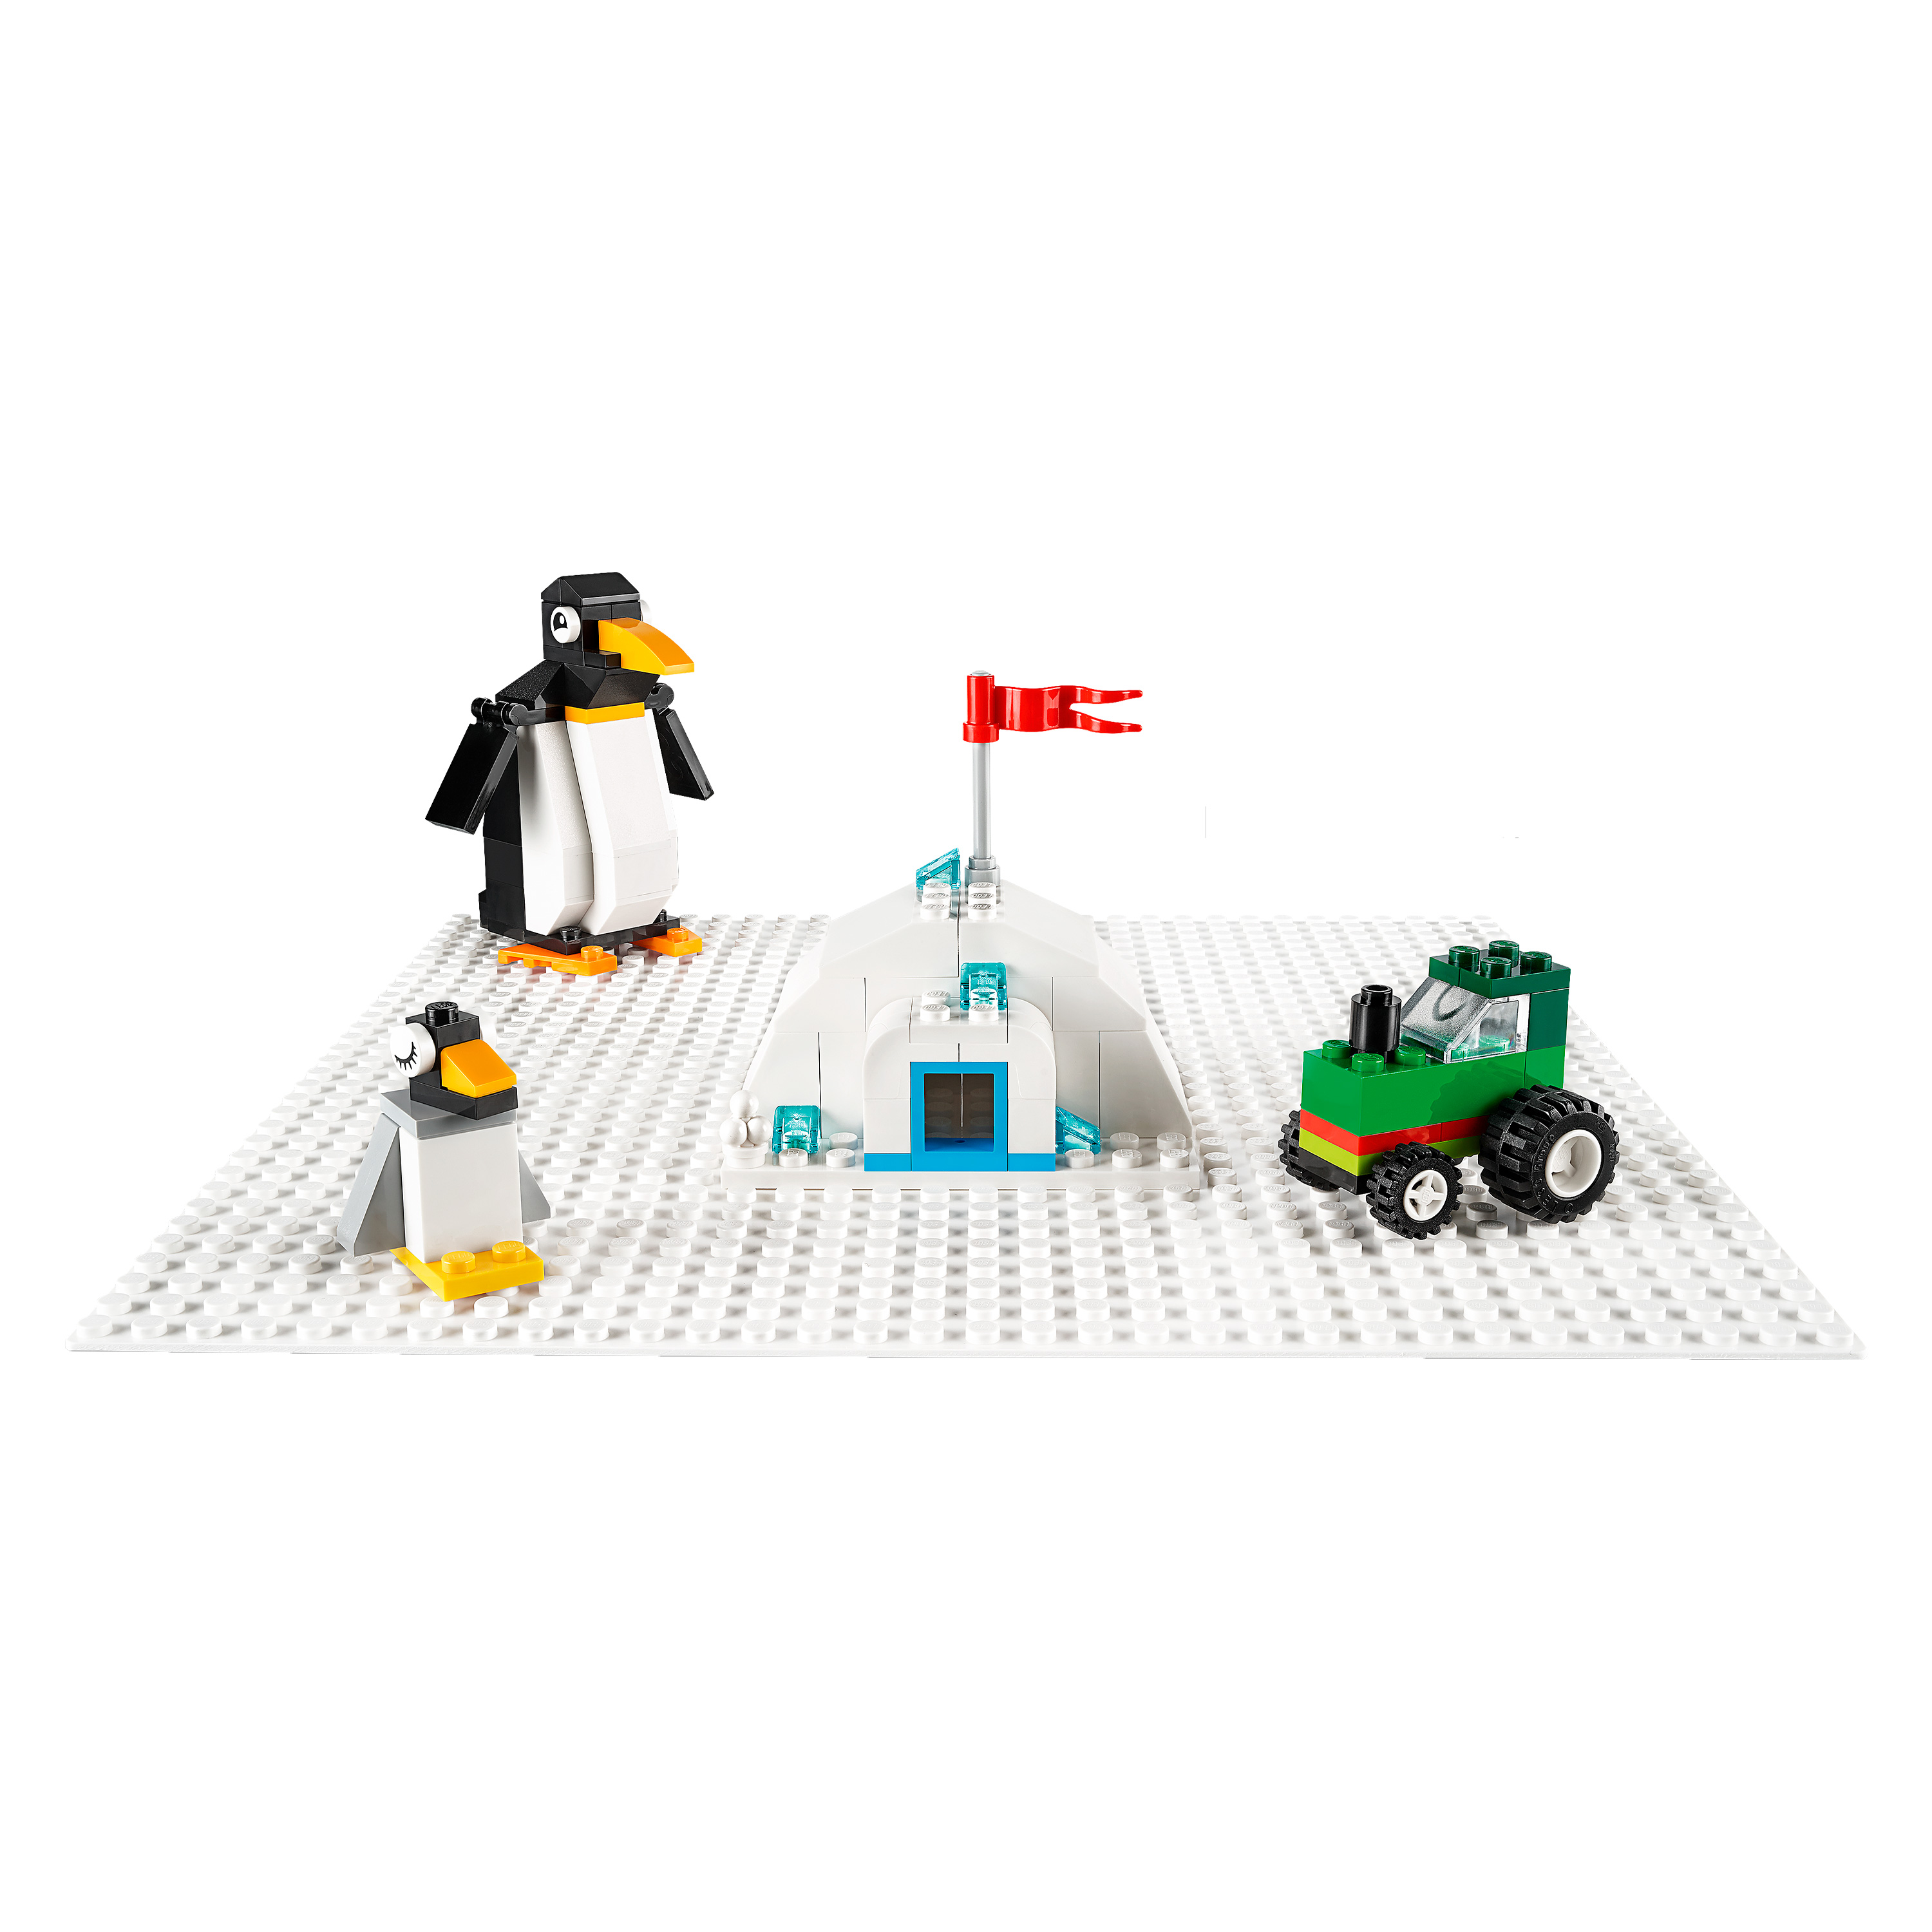 LEGO® Classic 11026 Weiße Bauplatte